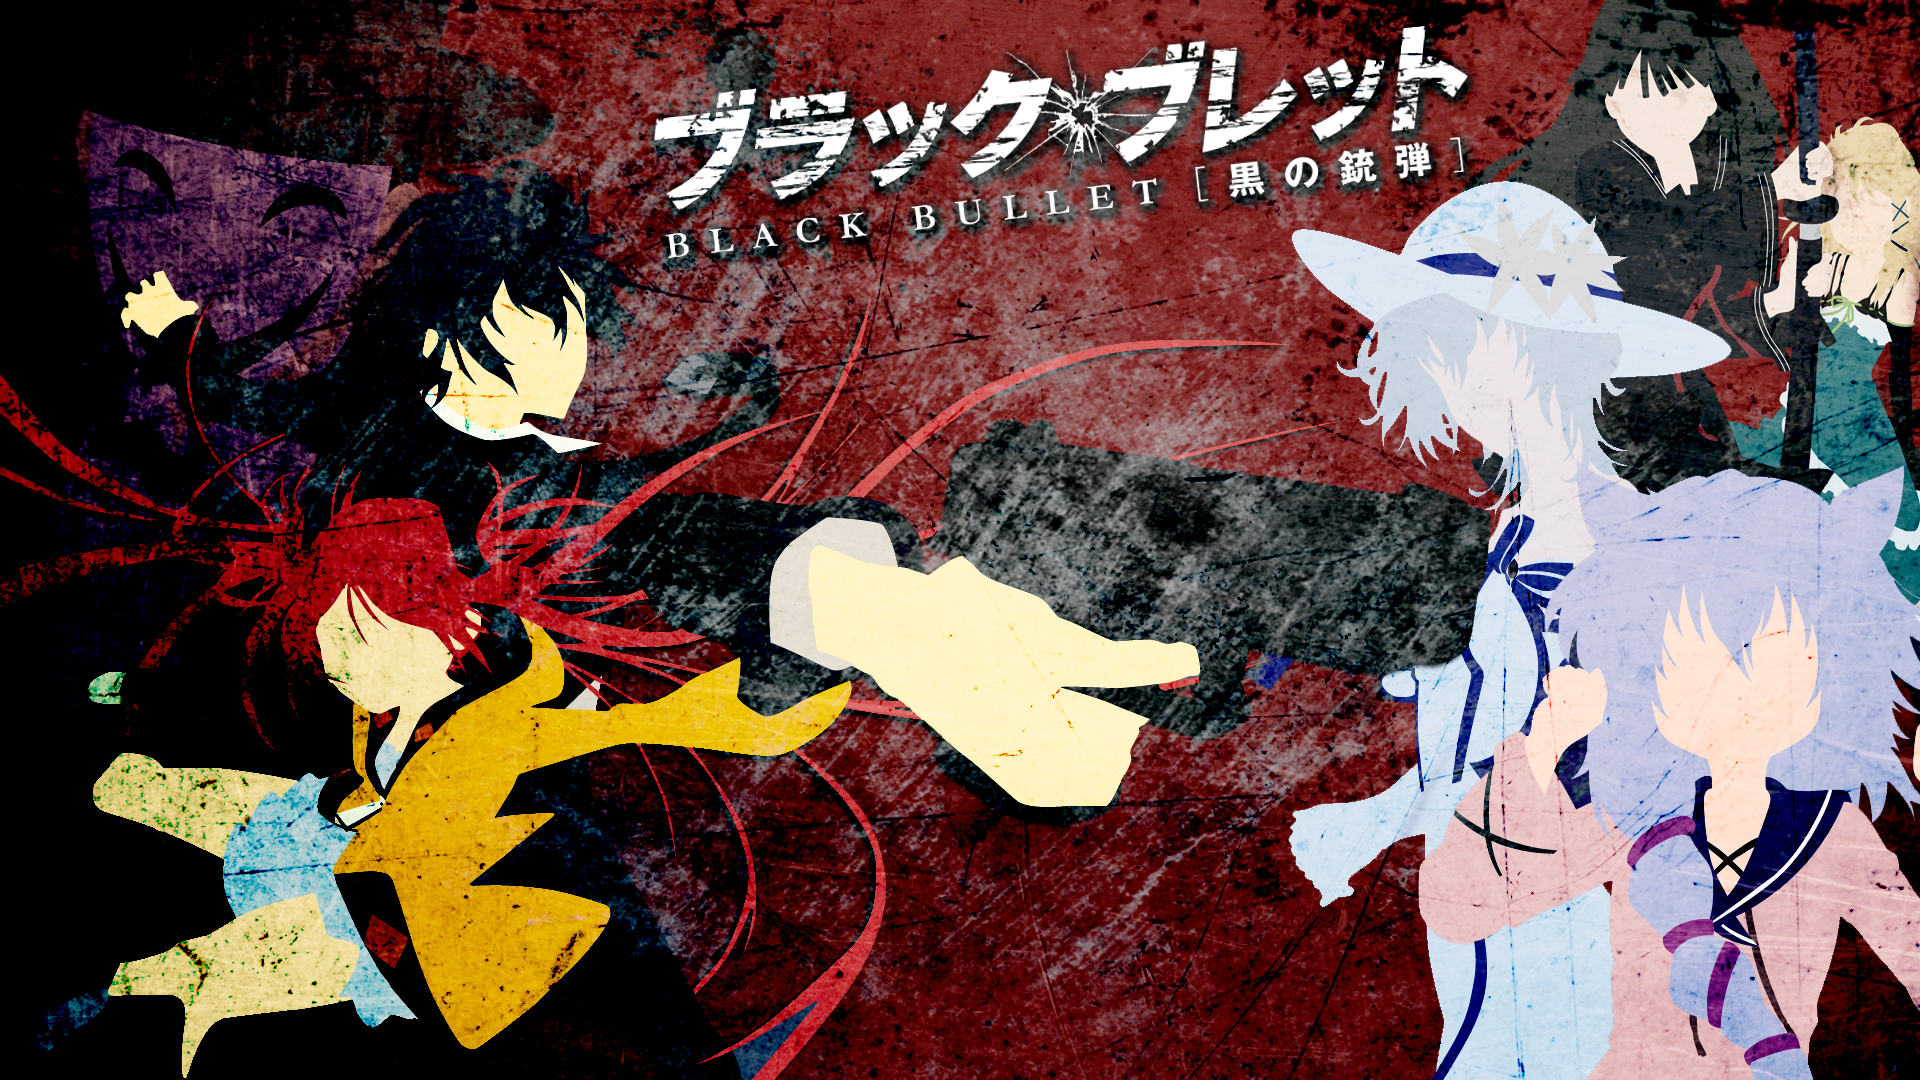 Anime Black Bullet HD Wallpaper